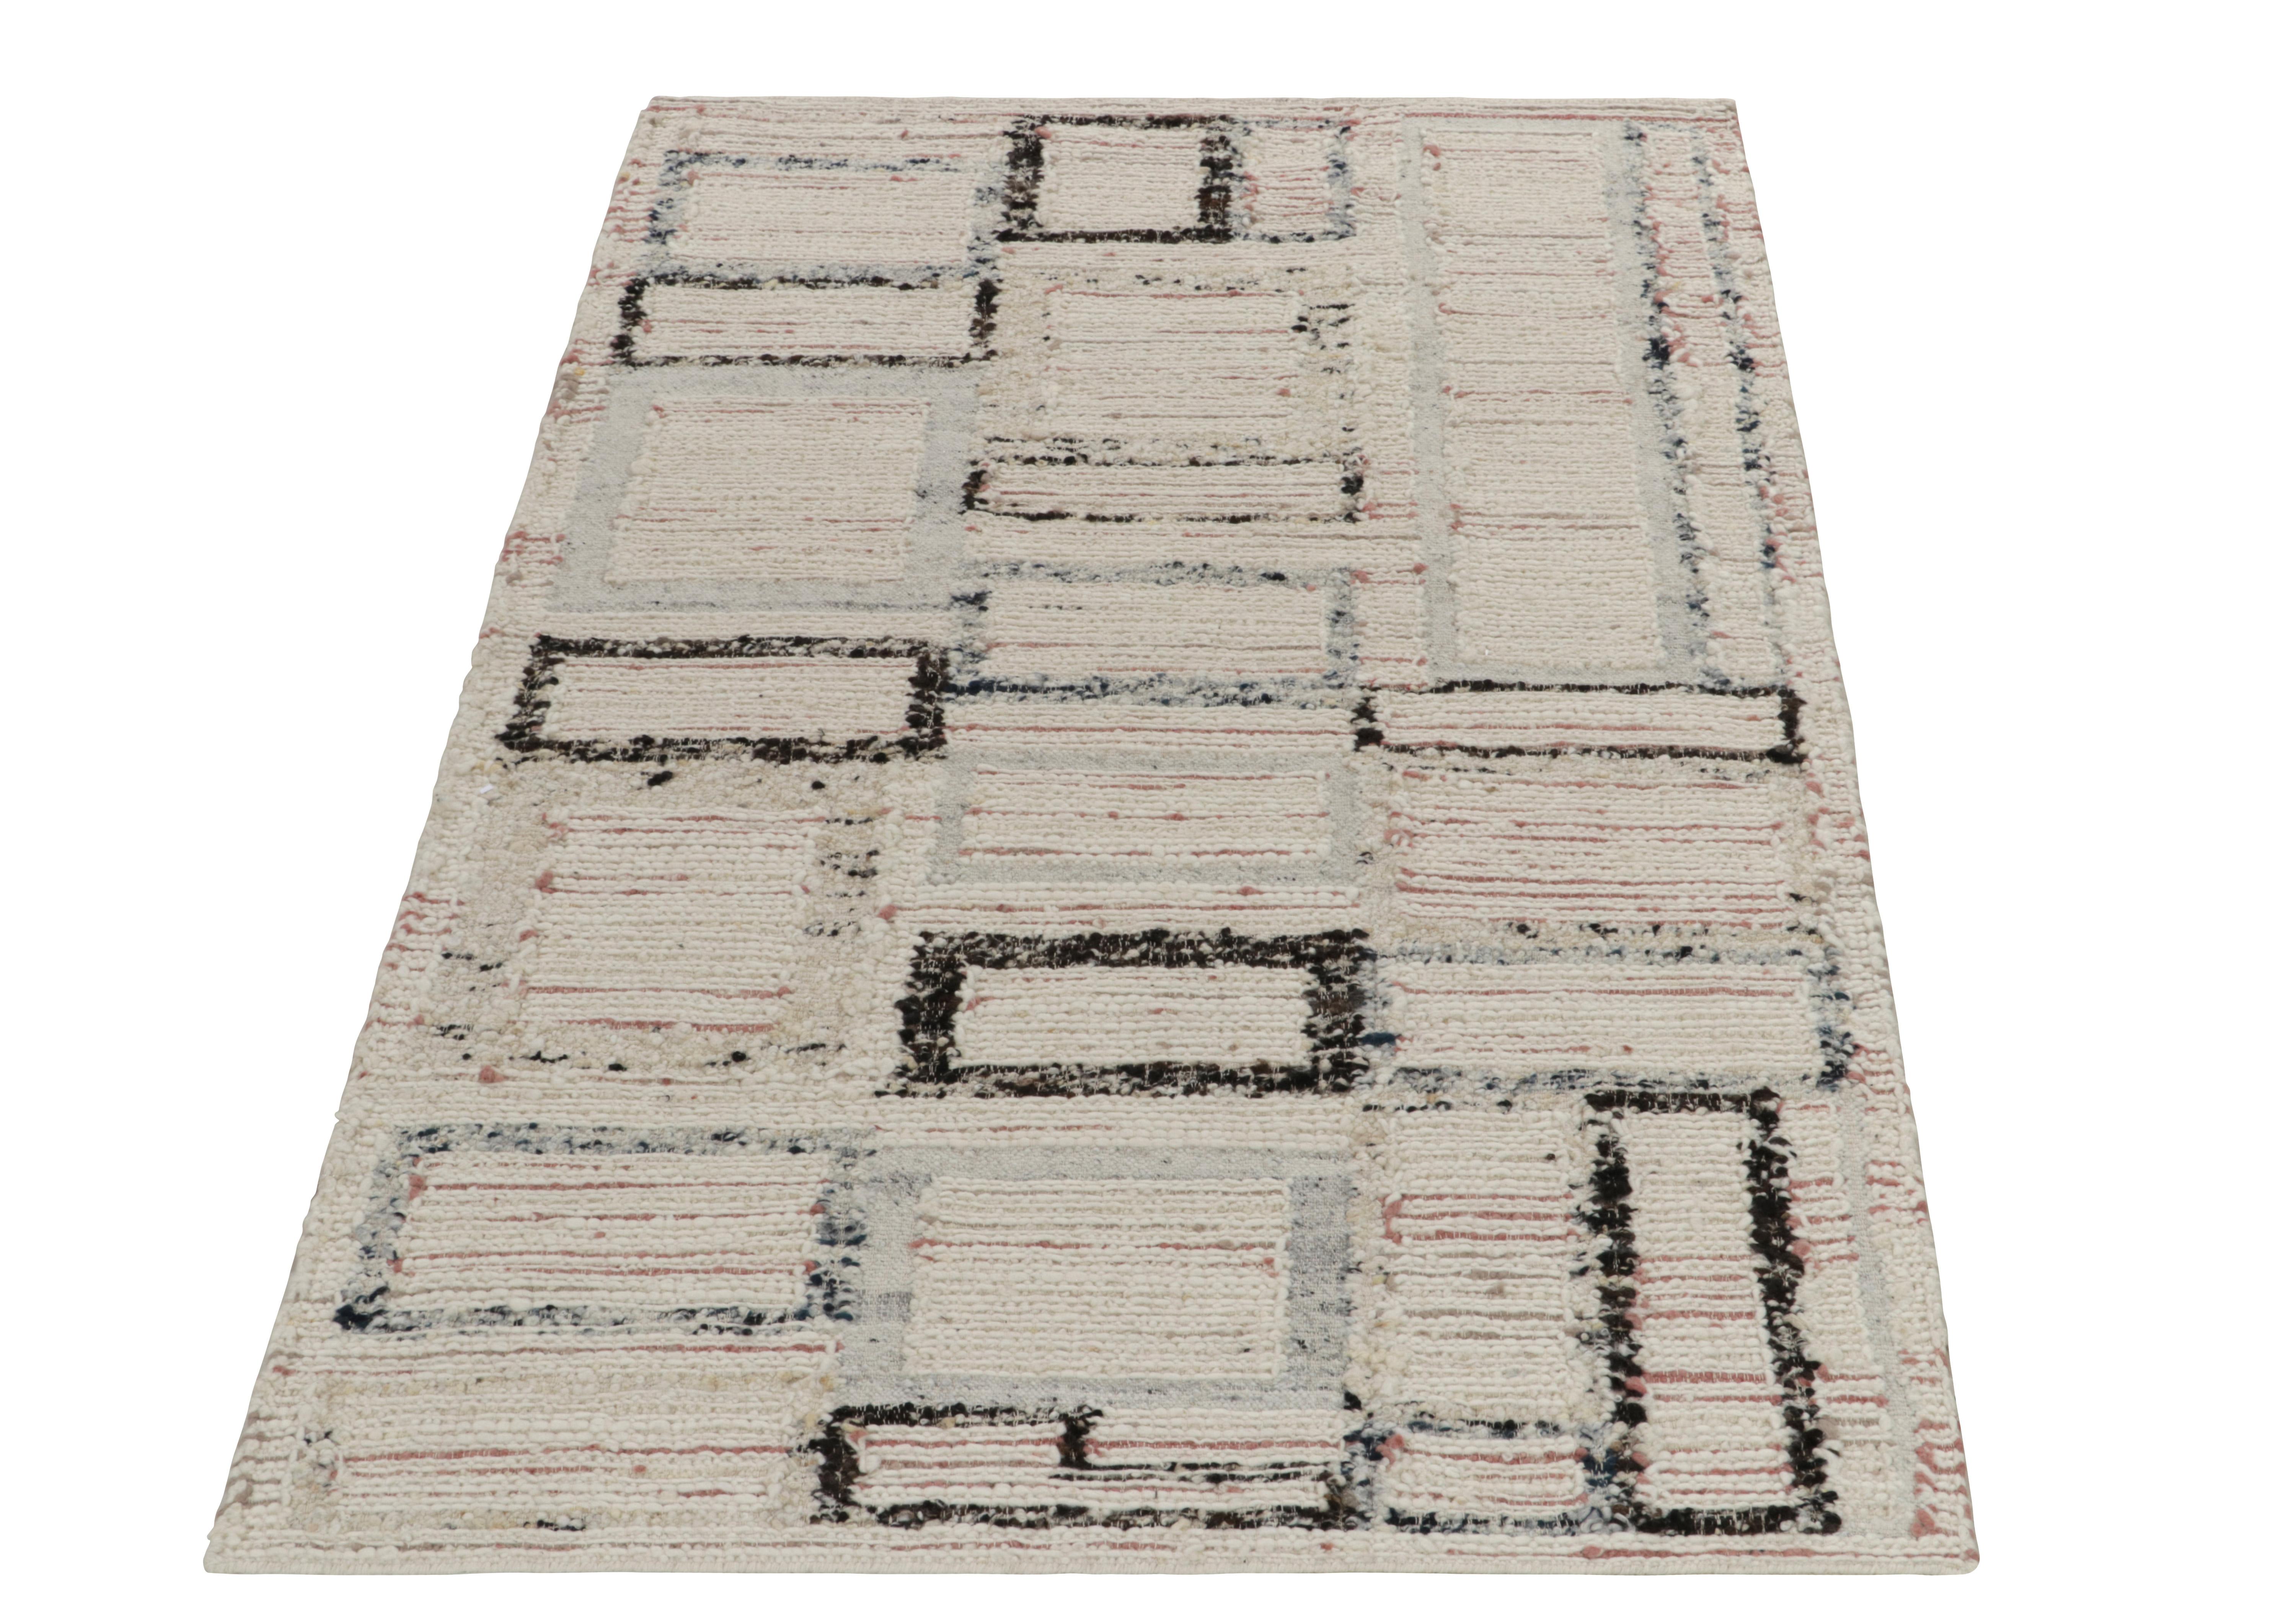 Rug & Kilim enthüllt seine Innovation in Stil und Technik mit diesem flach gewebten Teppich 5x8, der eine kühne texturale Innovation im Deco-Stil darstellt. Der Teppich zeichnet sich durch ein modernes geometrisches Muster mit Akzenten in Rosa-Rot,